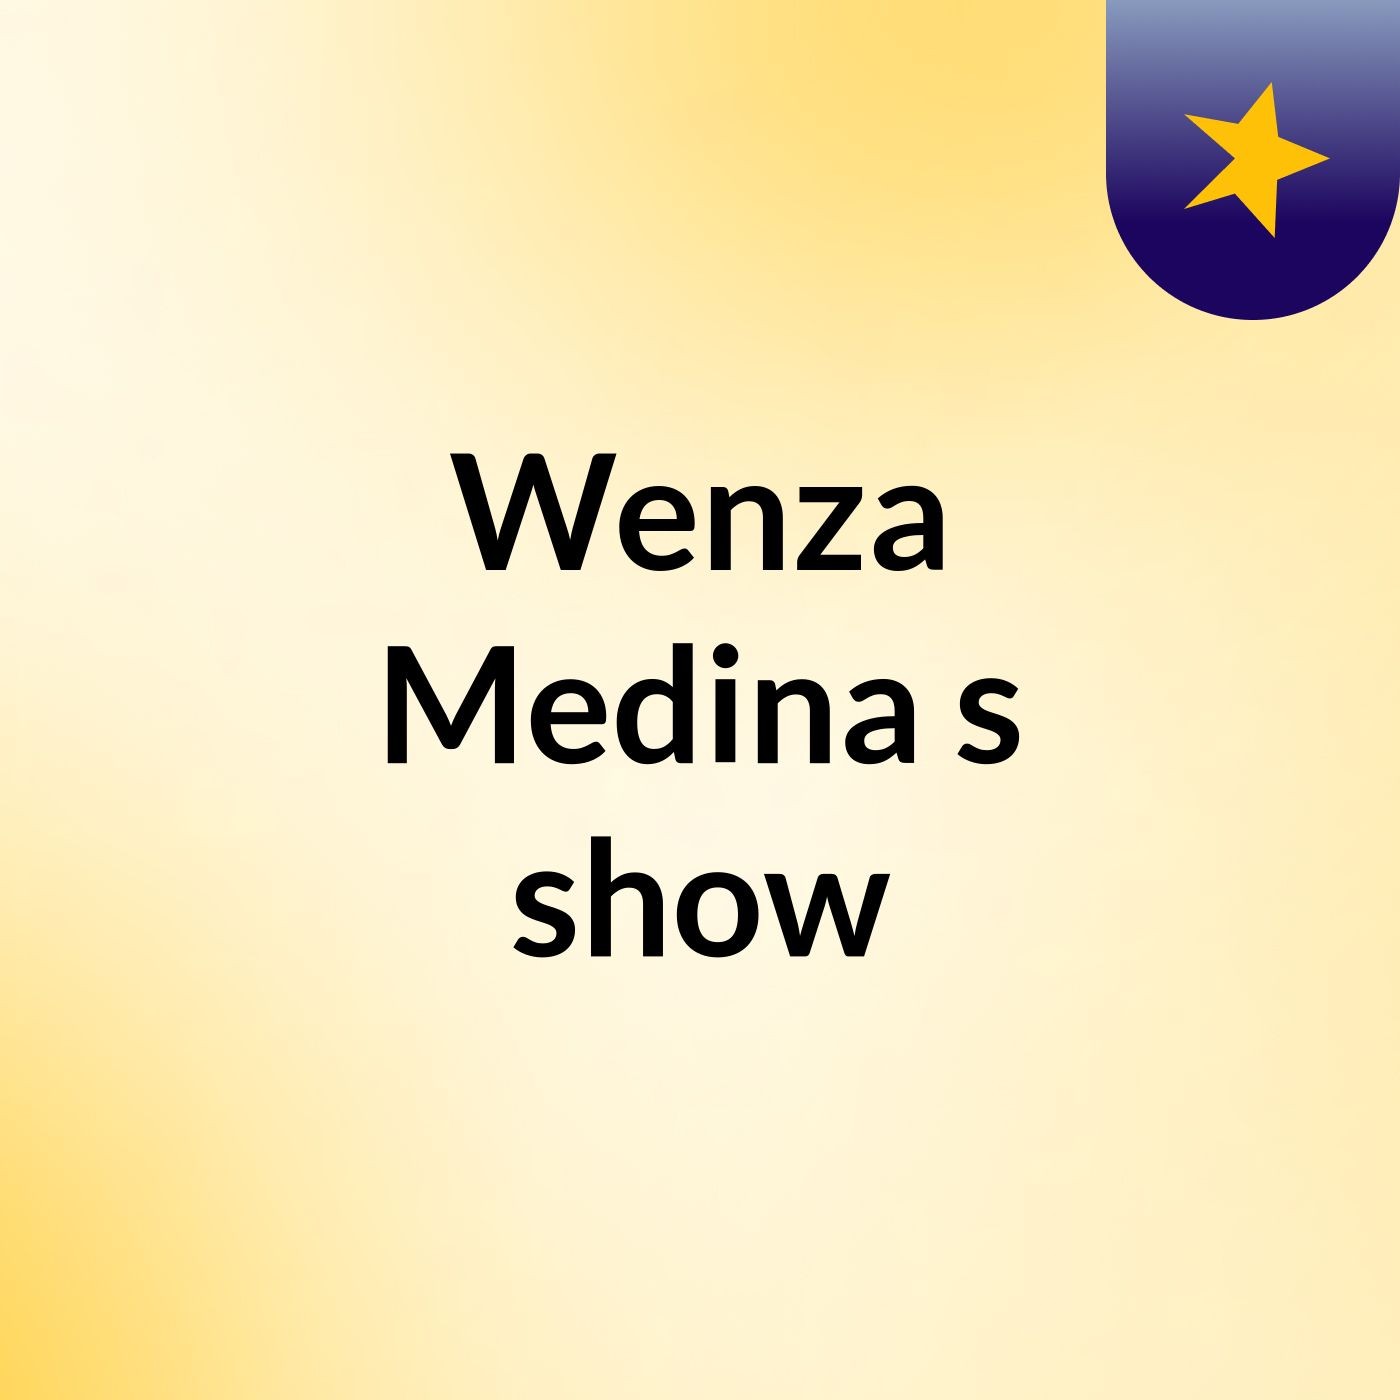 Wenza Medina's show